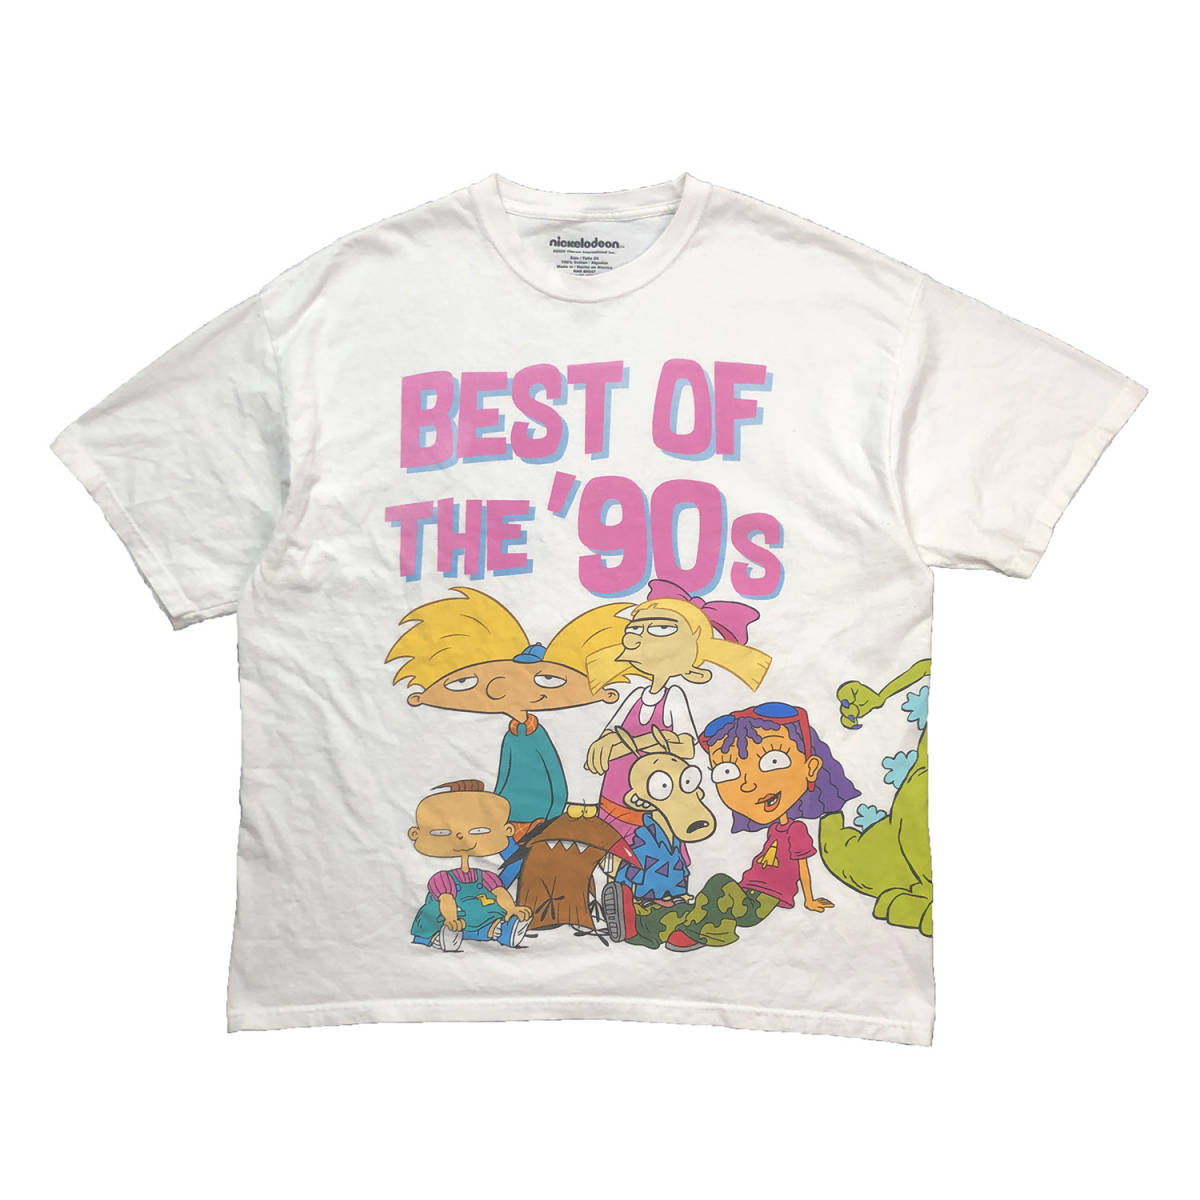 USA 古着 ニコロデオン ヘイアーノルド ビッグプリント オーバーサイズ キャラクター Tシャツ メンズ2XL 大きいサイズ Nickelodeon BA1977